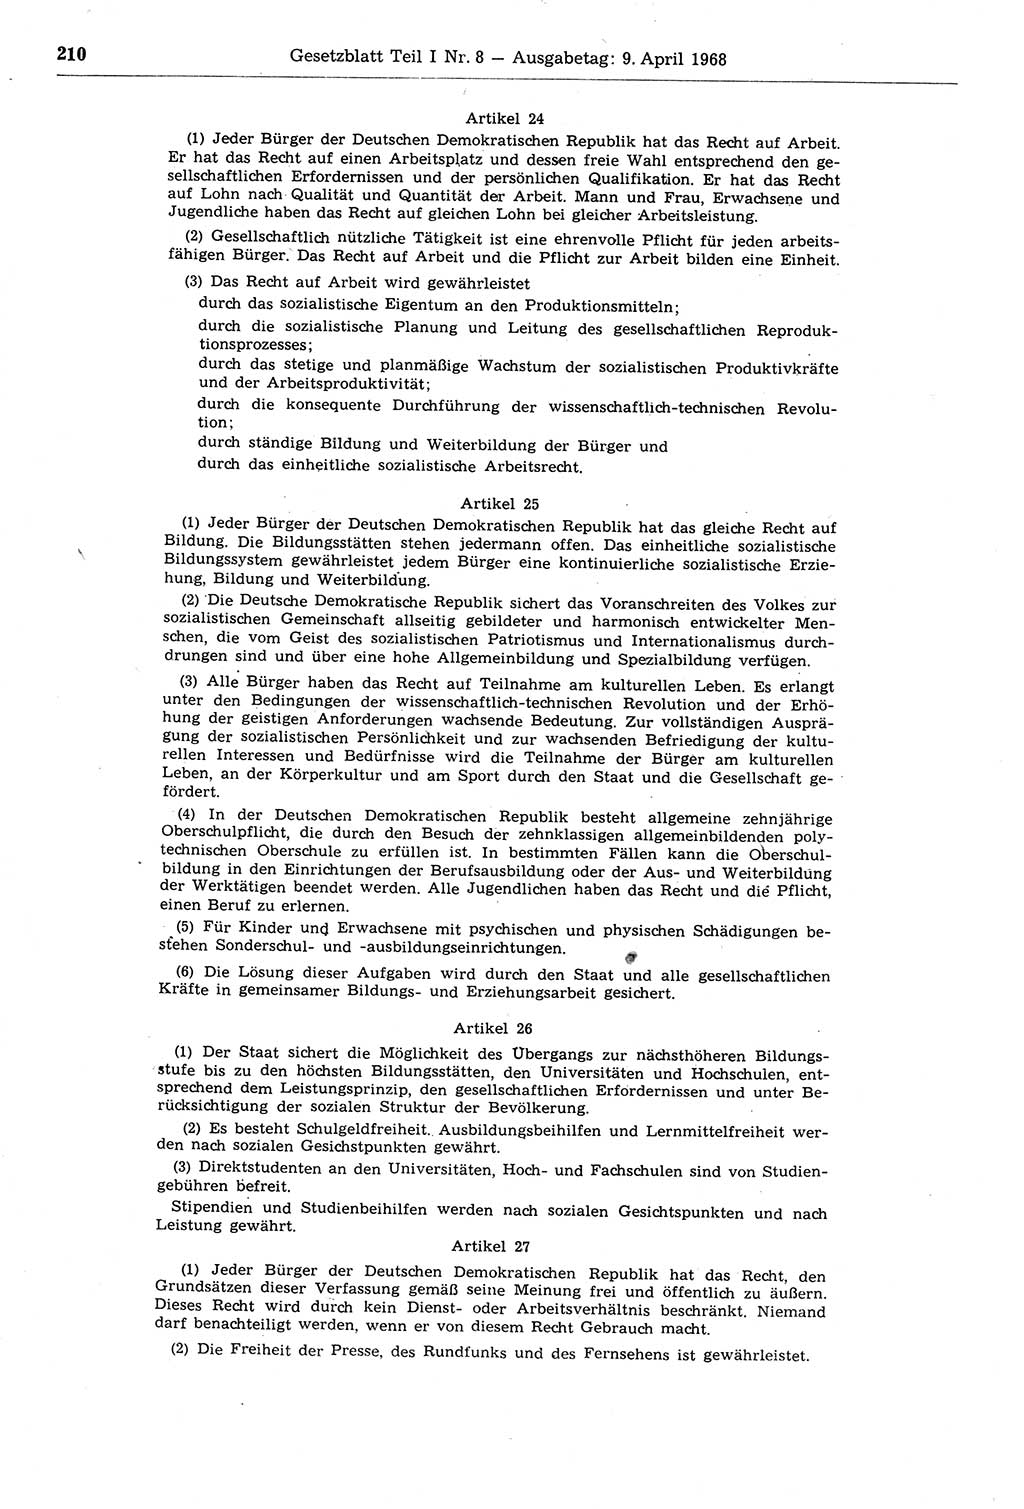 Gesetzblatt (GBl.) der Deutschen Demokratischen Republik (DDR) Teil Ⅰ 1968, Seite 210 (GBl. DDR Ⅰ 1968, S. 210)